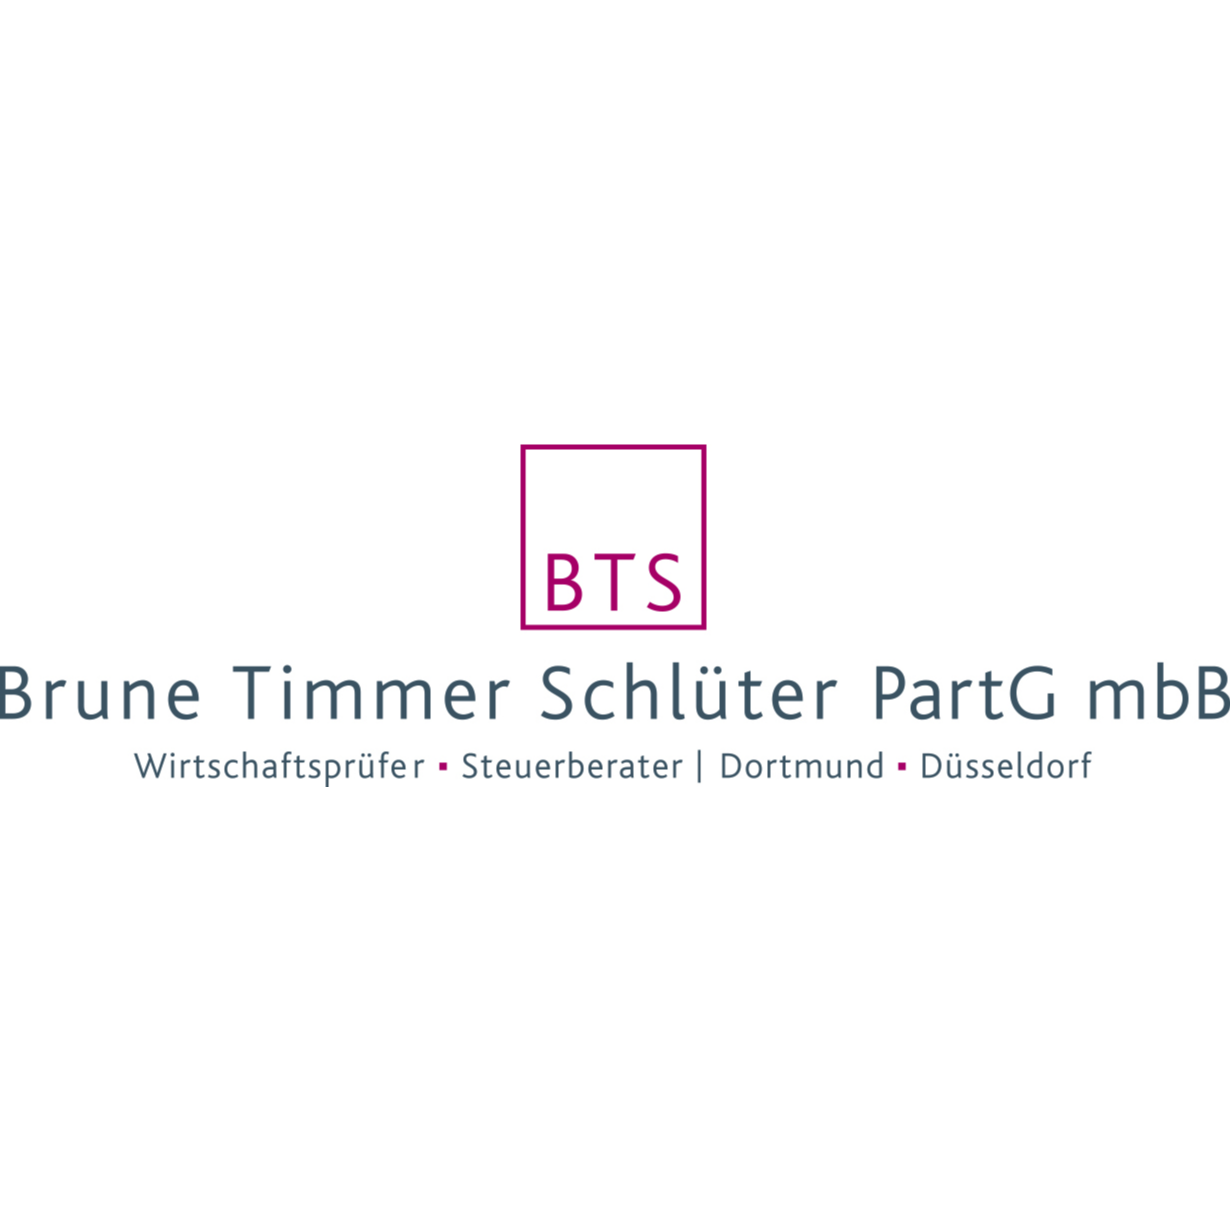 BTS Brune Timmer Schlüter PartG mbB in Dortmund - Logo